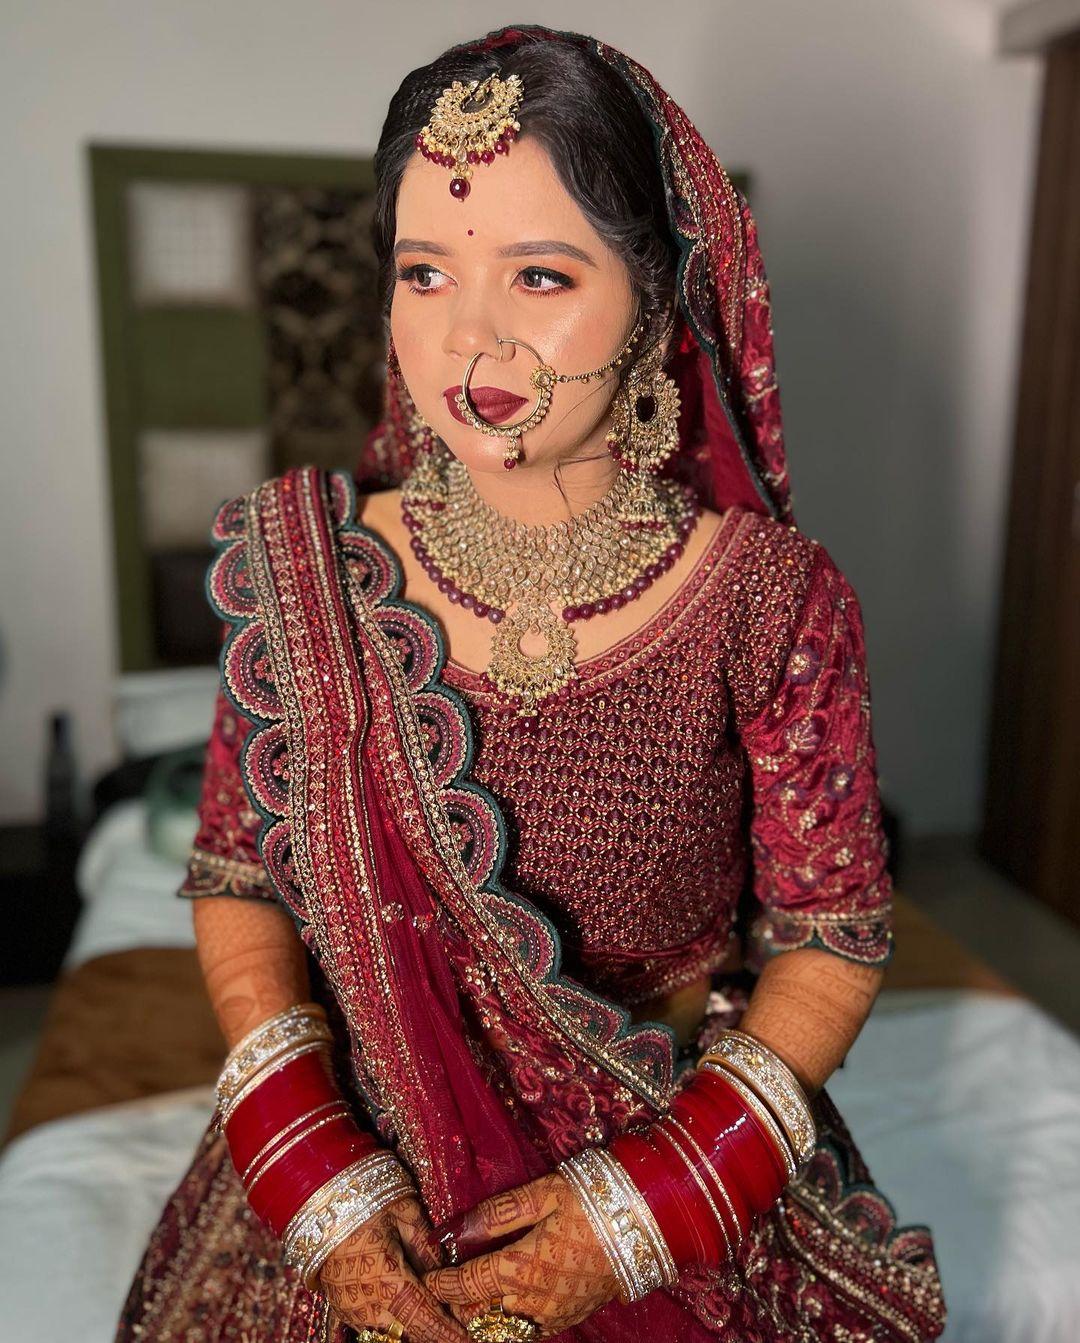 class="content__text"
 Adorable transformation for this beautiful bride Nisha🫶🏼✨

Makeup : @priyanshisonimua 

 #bride #bridalmakeup #bridalmakeupartist #indianbride #wedding #indianwedding #indianweddings #trending #minimalmakeup #naturalmakeup #dewymakeup #photo #photooftheday #bridalmakeuplook #trendingbrides #foryou #explore #explorepage #indianwear 
 